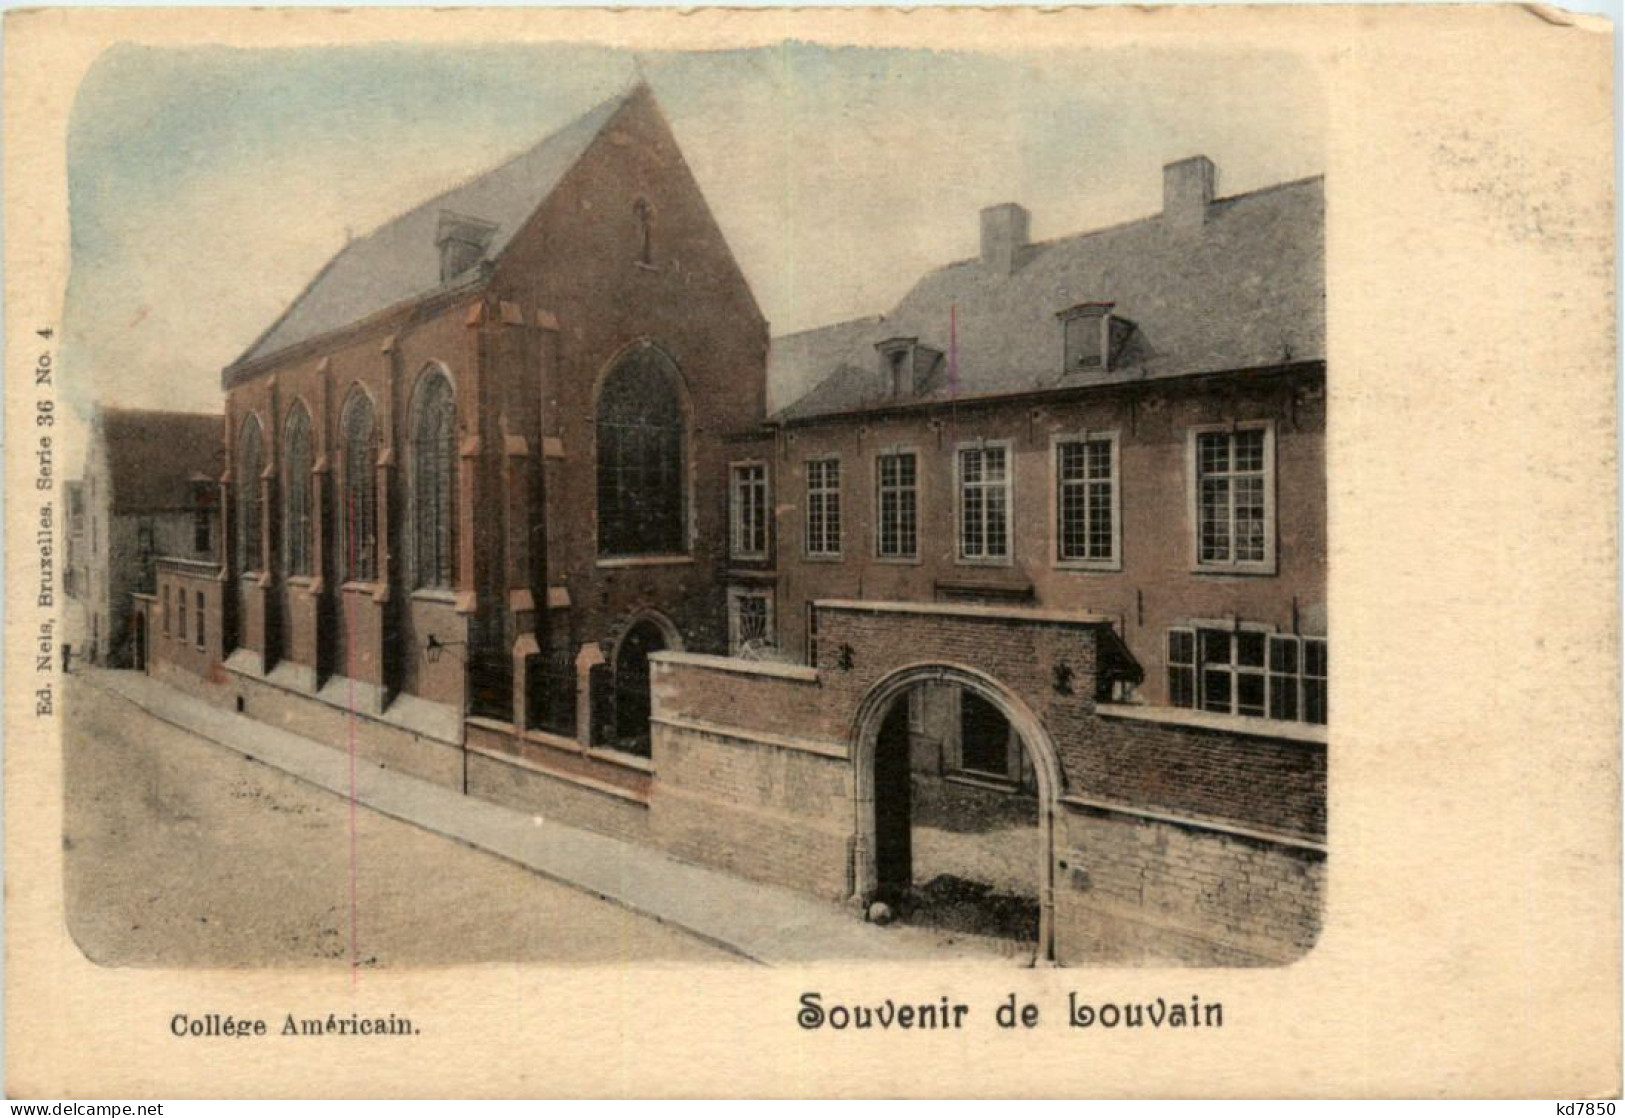 Souvenir De Louvain - College Americain - Leuven